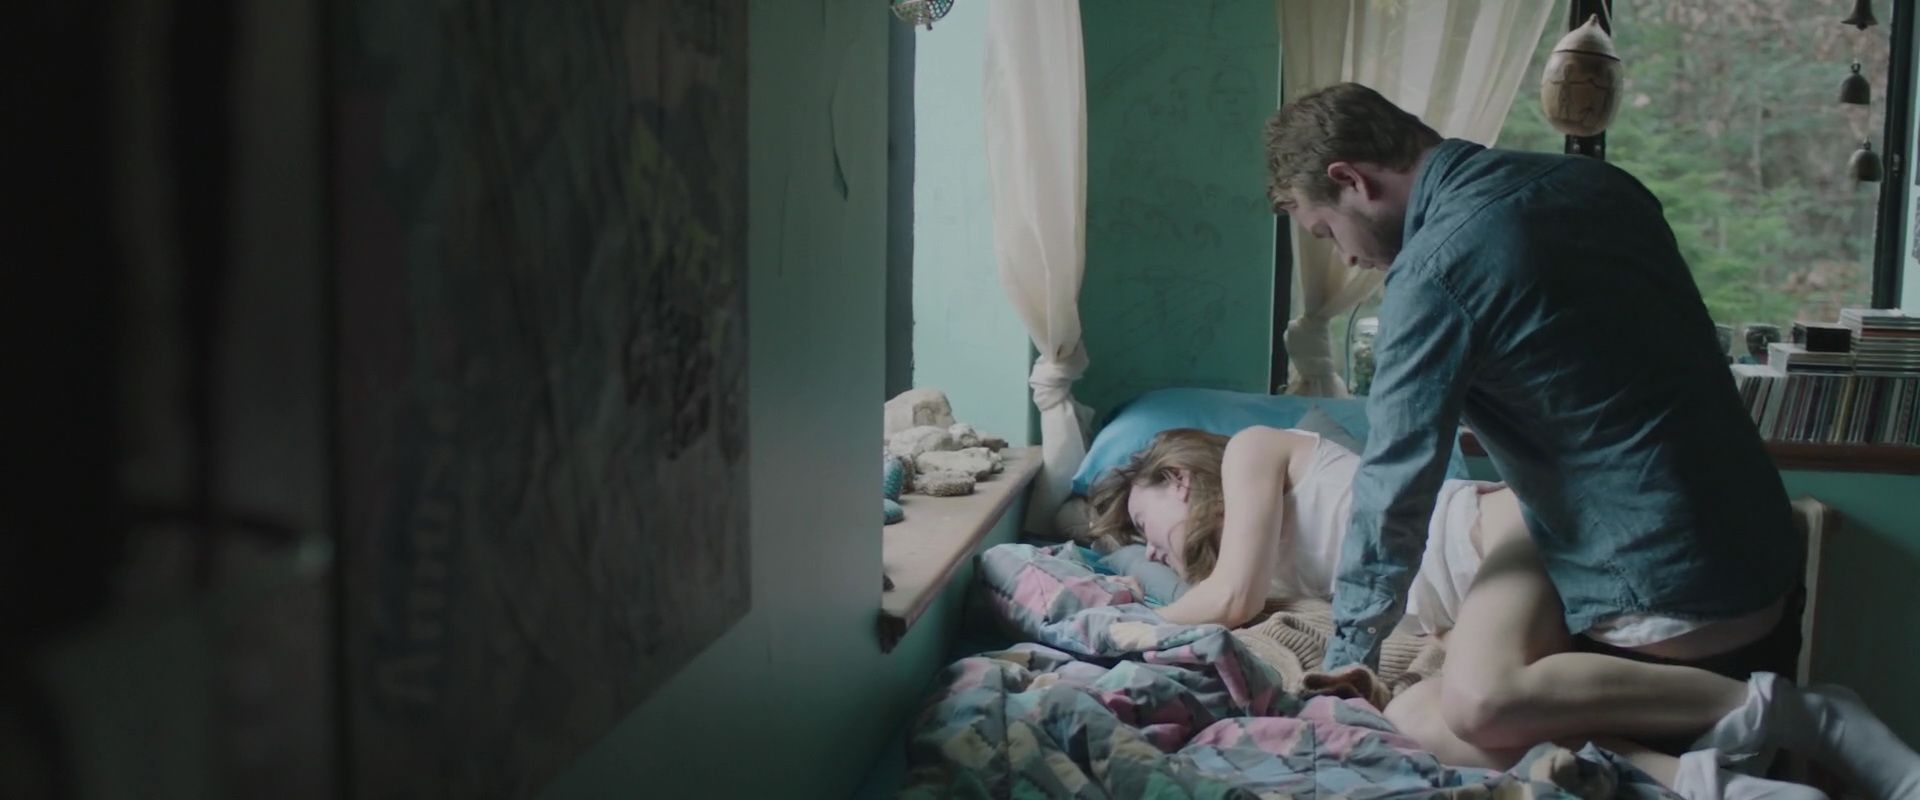 Stephanie Ellis Nude – The Sleepwalker (2014) HD 1080p